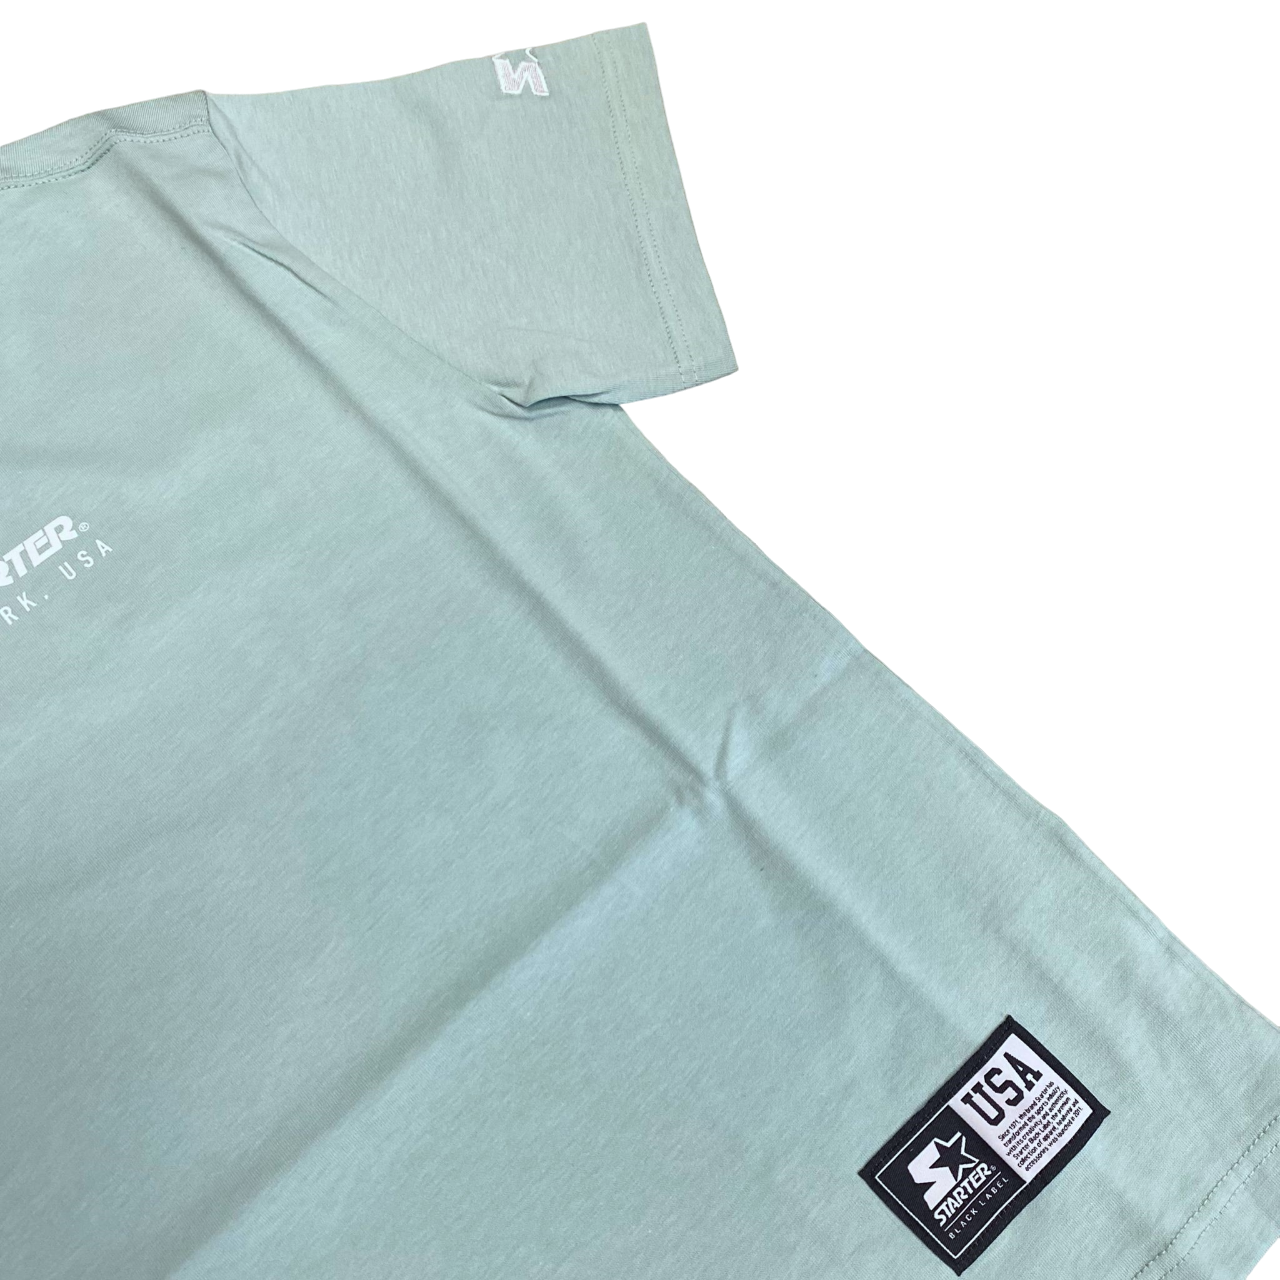 Starter short sleeve t-shirt for boys with 1246 fog print